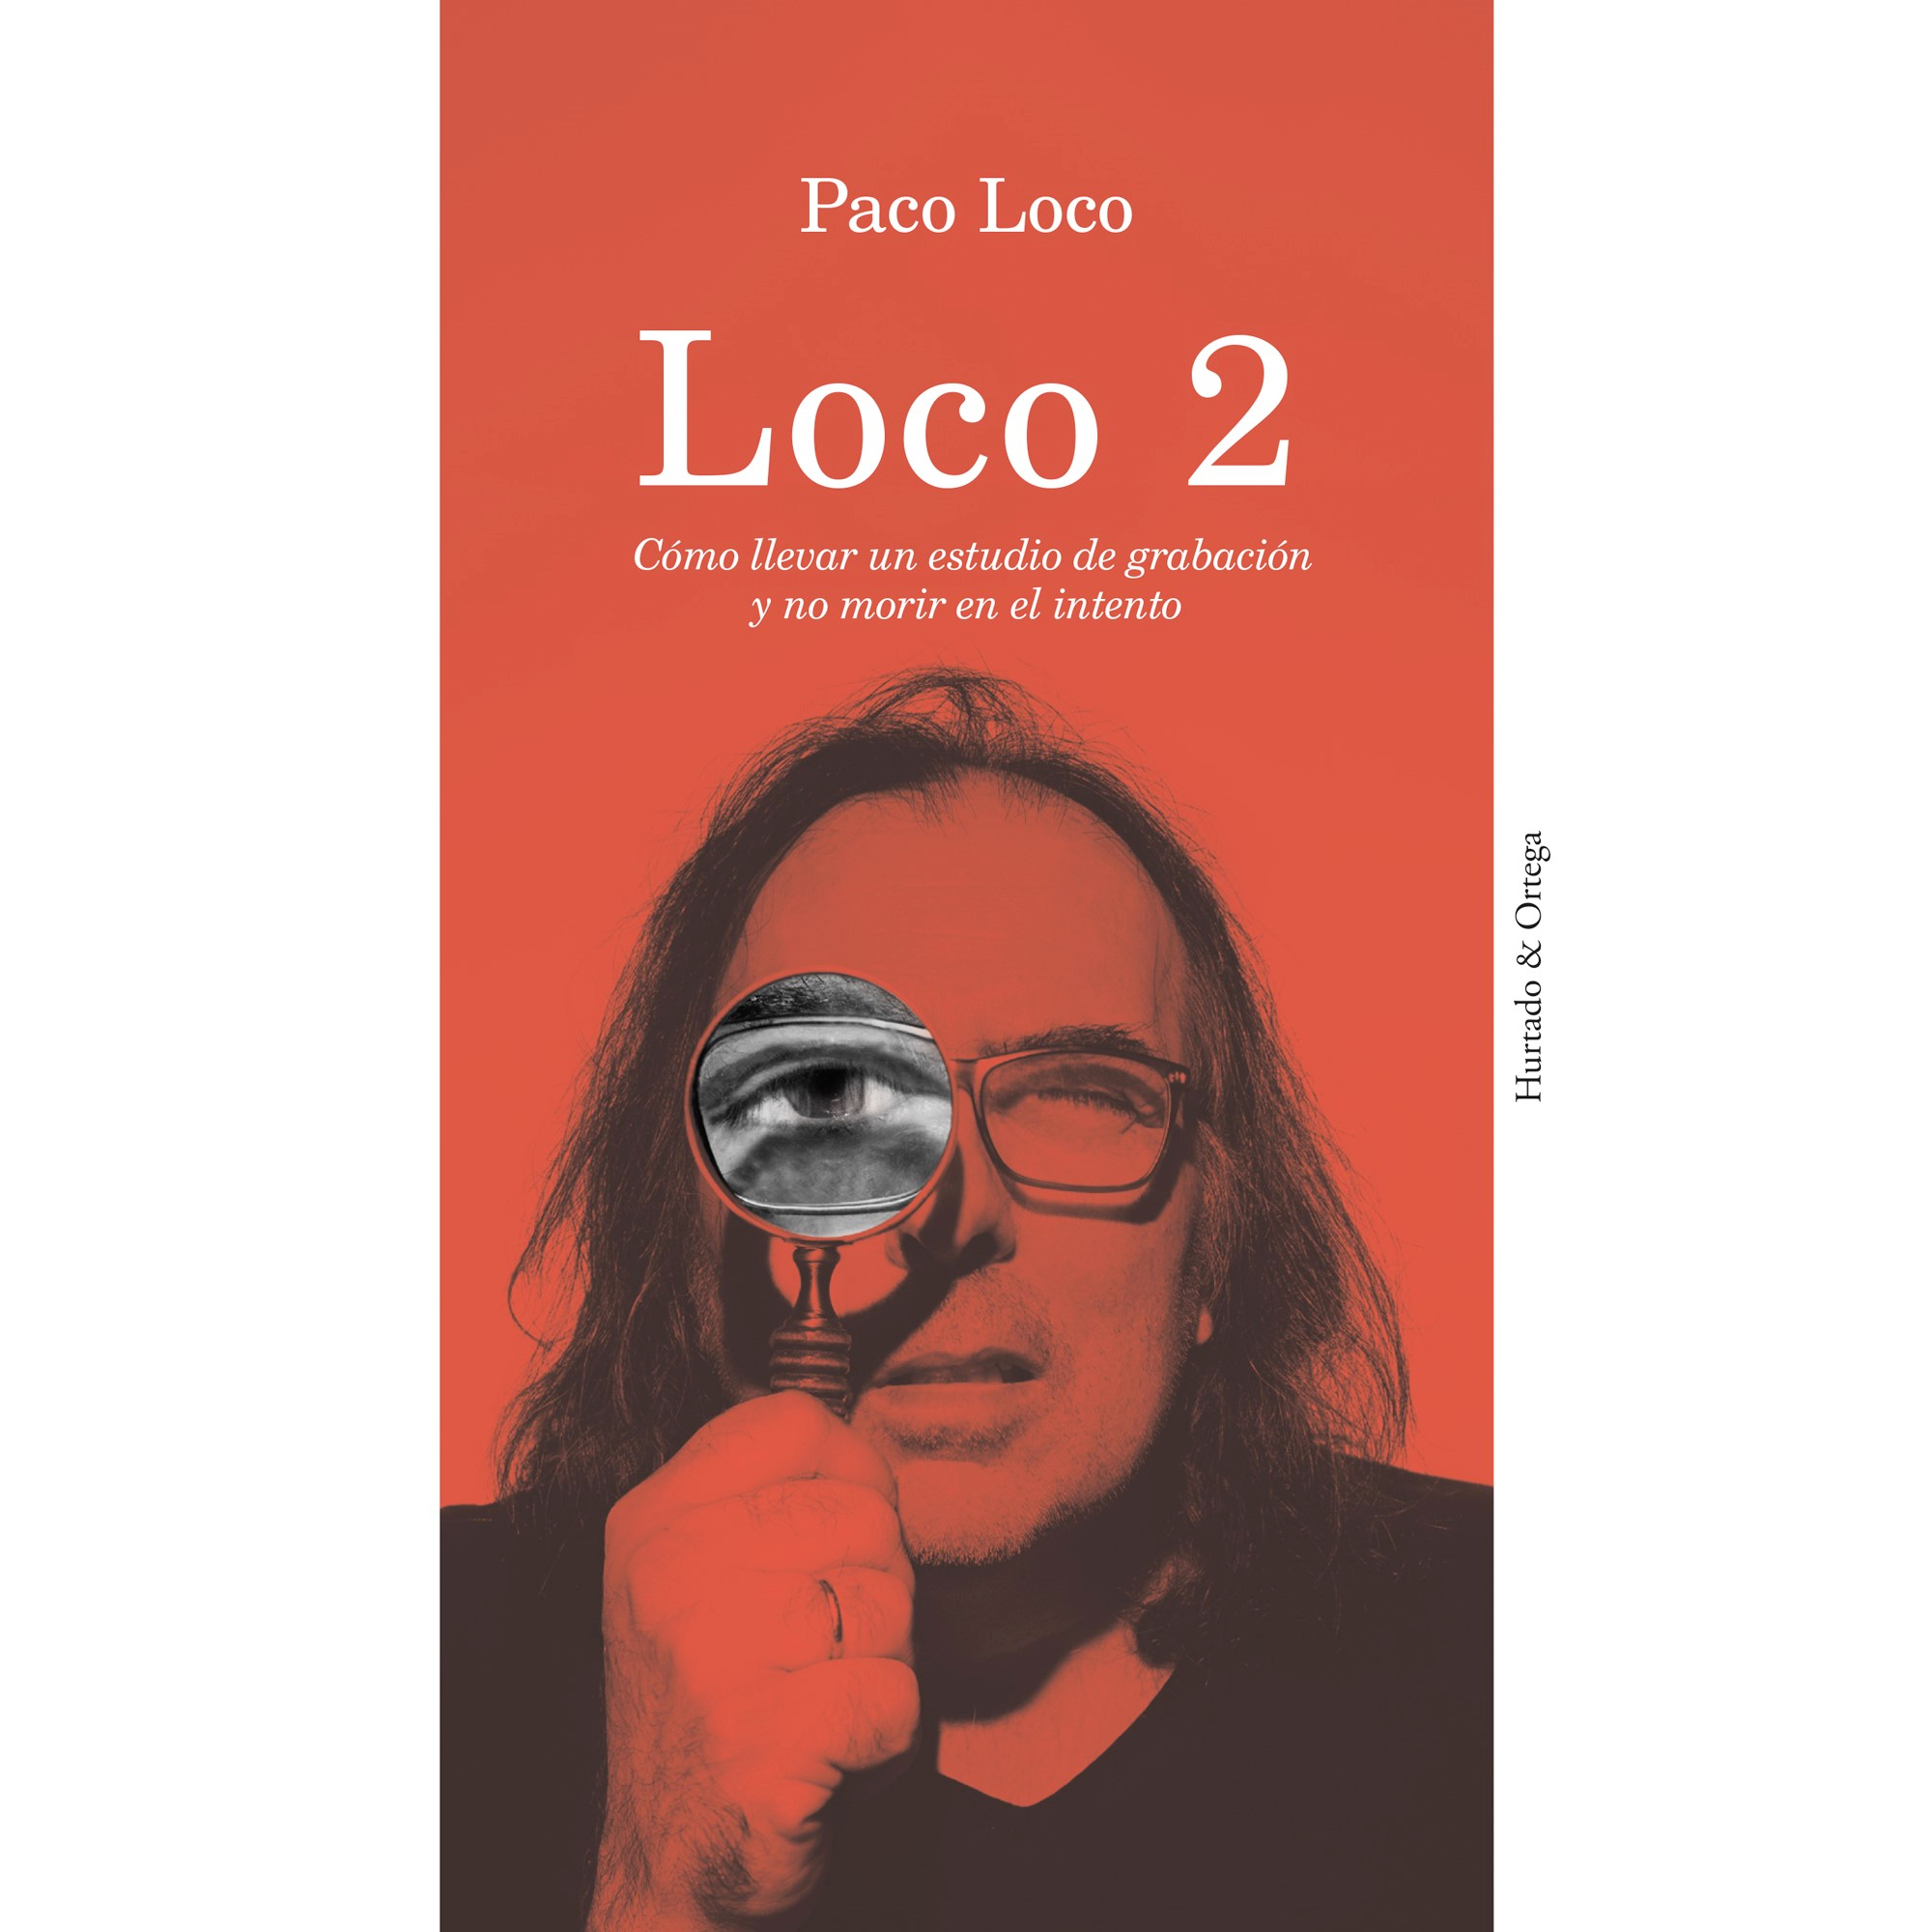 "Loco 2" de Paco Loco